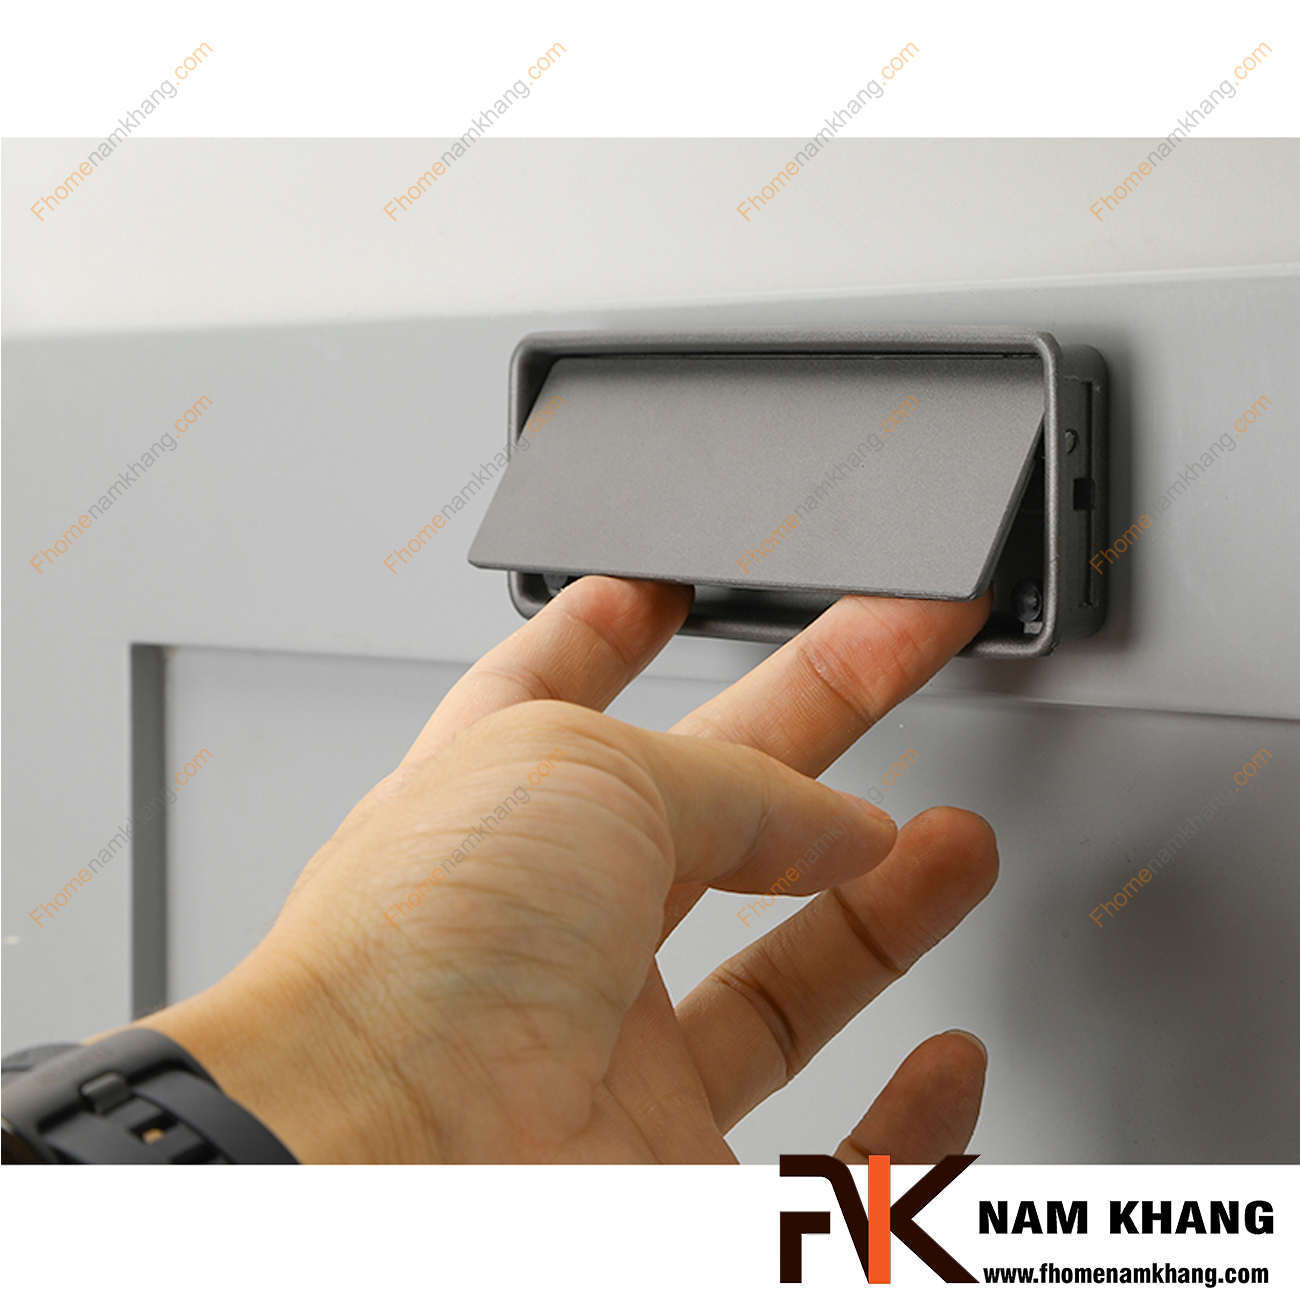 Tay nắm âm tủ màu xám NK237-X là loại tay nắm chuyên dùng cho các loại tủ đặt ở những nơi có không gian hạn chế hoặc dùng để nâng cao tính thẫm mỹ của sản phẩm